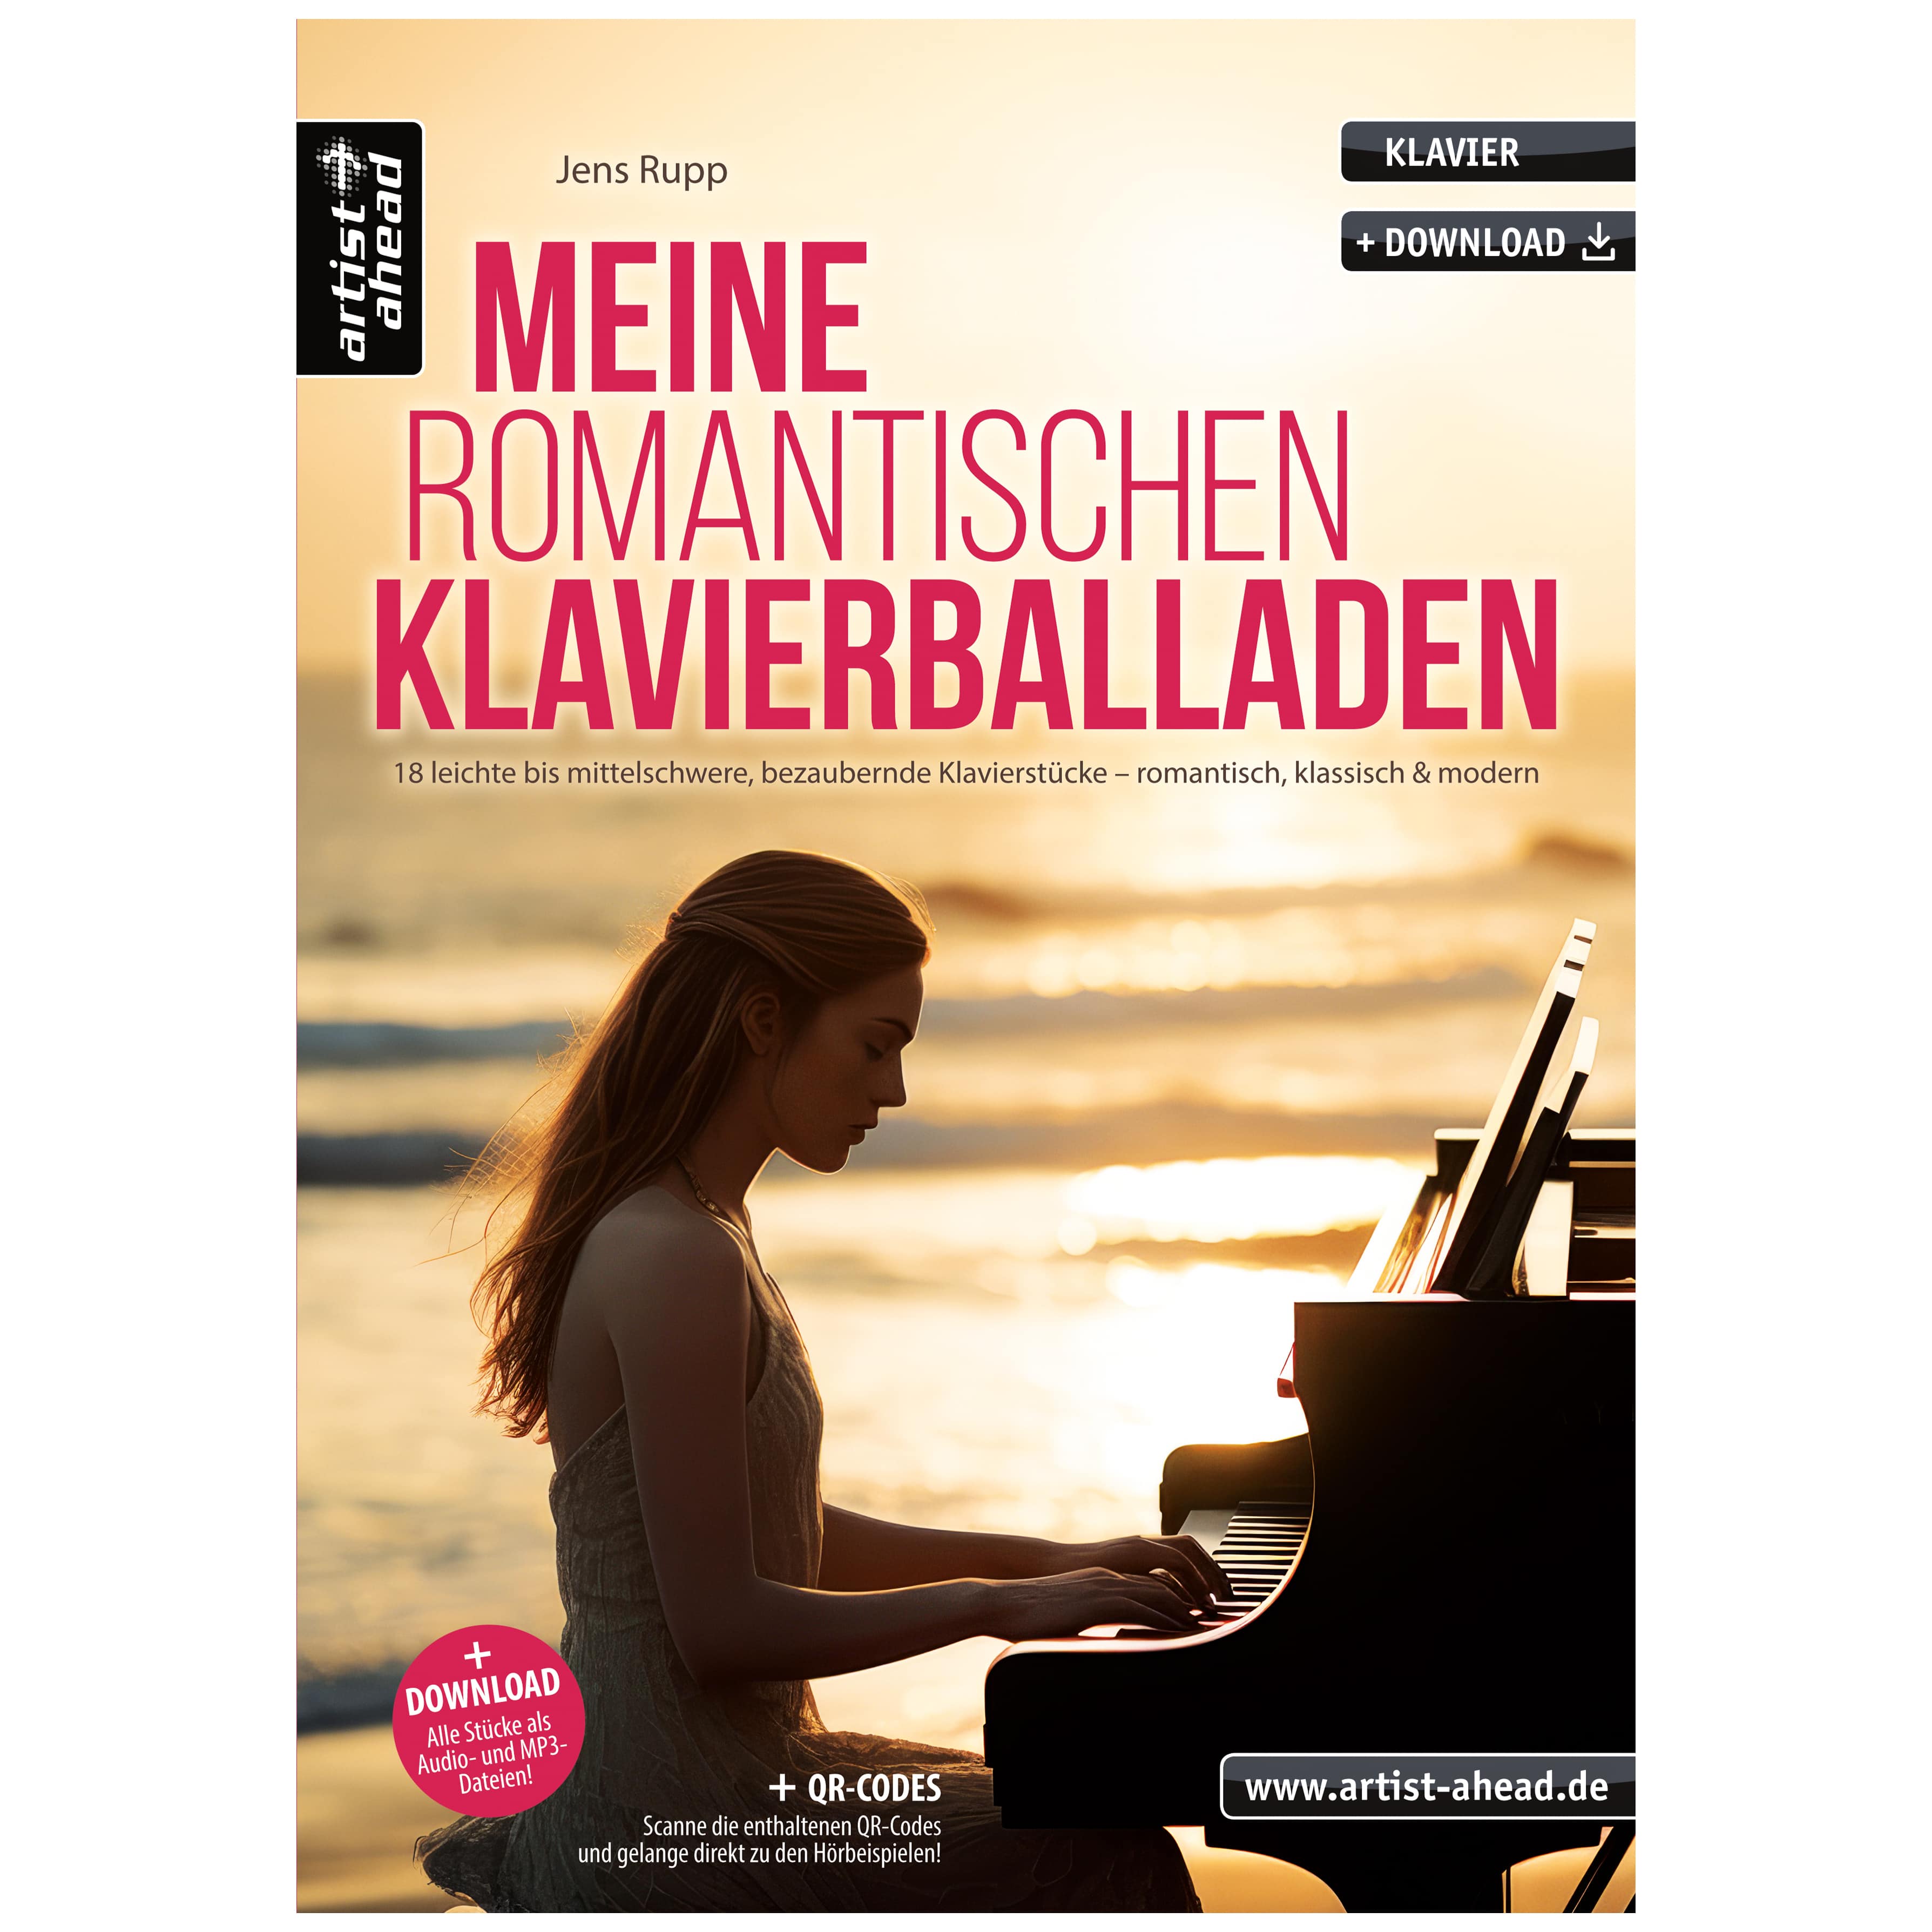 Artist Ahead Meine romantischen Klavierballaden - Jens Rupp